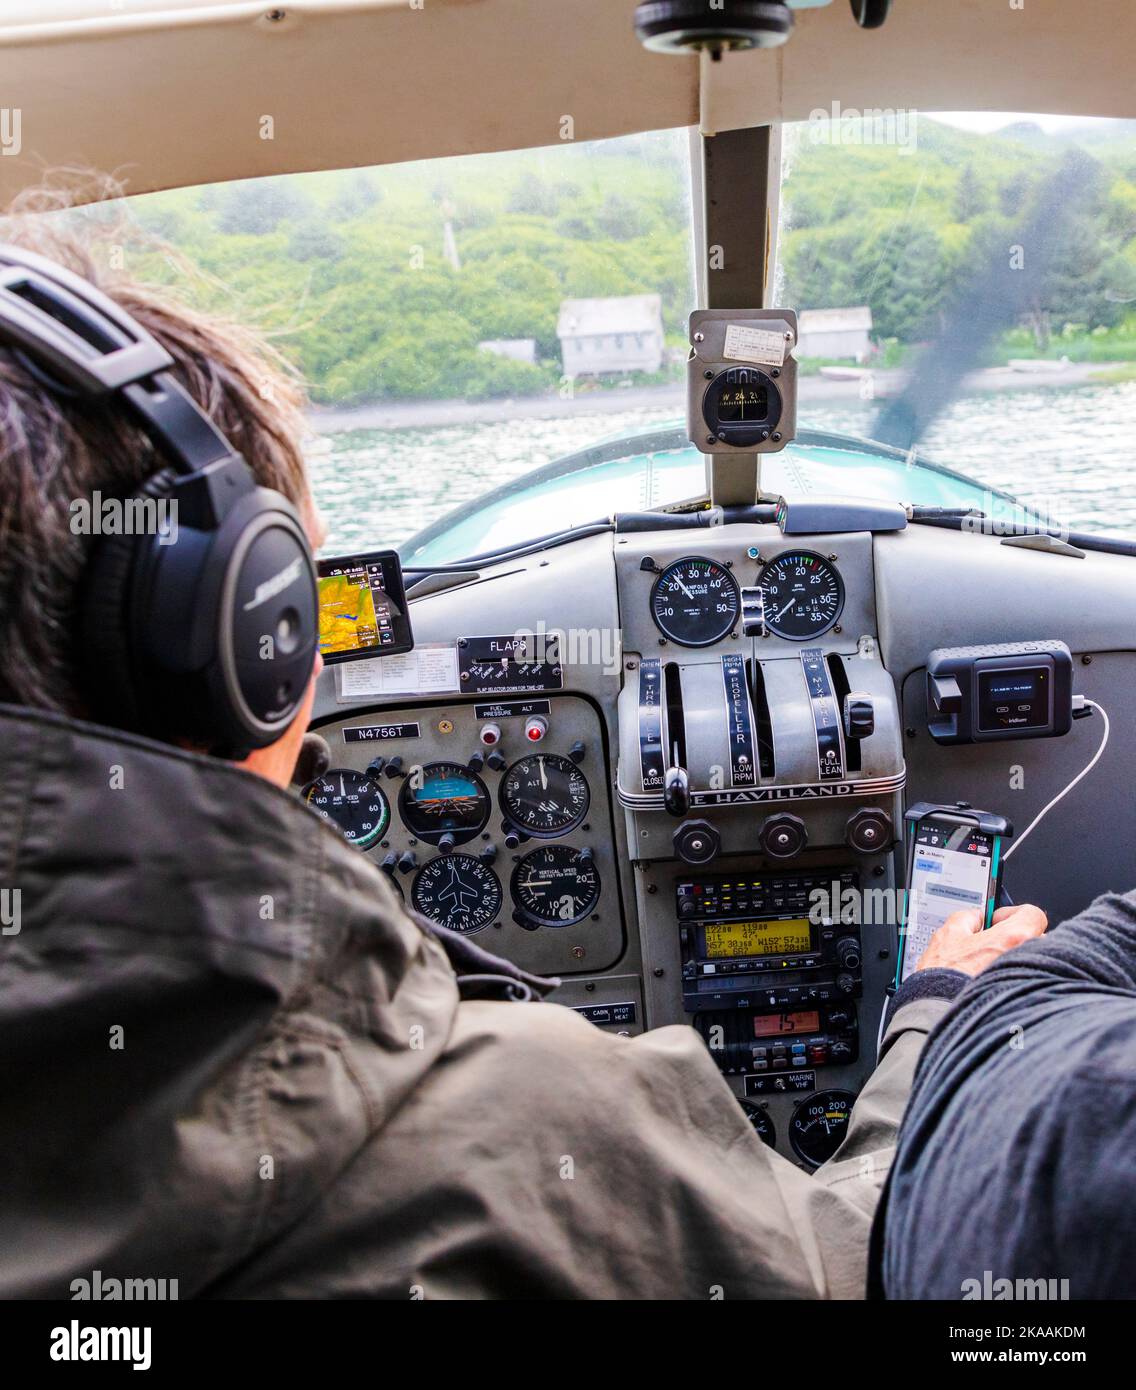 Bush Pilot & Guide Rolan Ruoss Textnachrichten während der Landung; Sea Hawk Air; Pilotierung seines de Havilland; Beaver; Wasserflugzeug; Kodiak Island; Alaska; USA Stockfoto